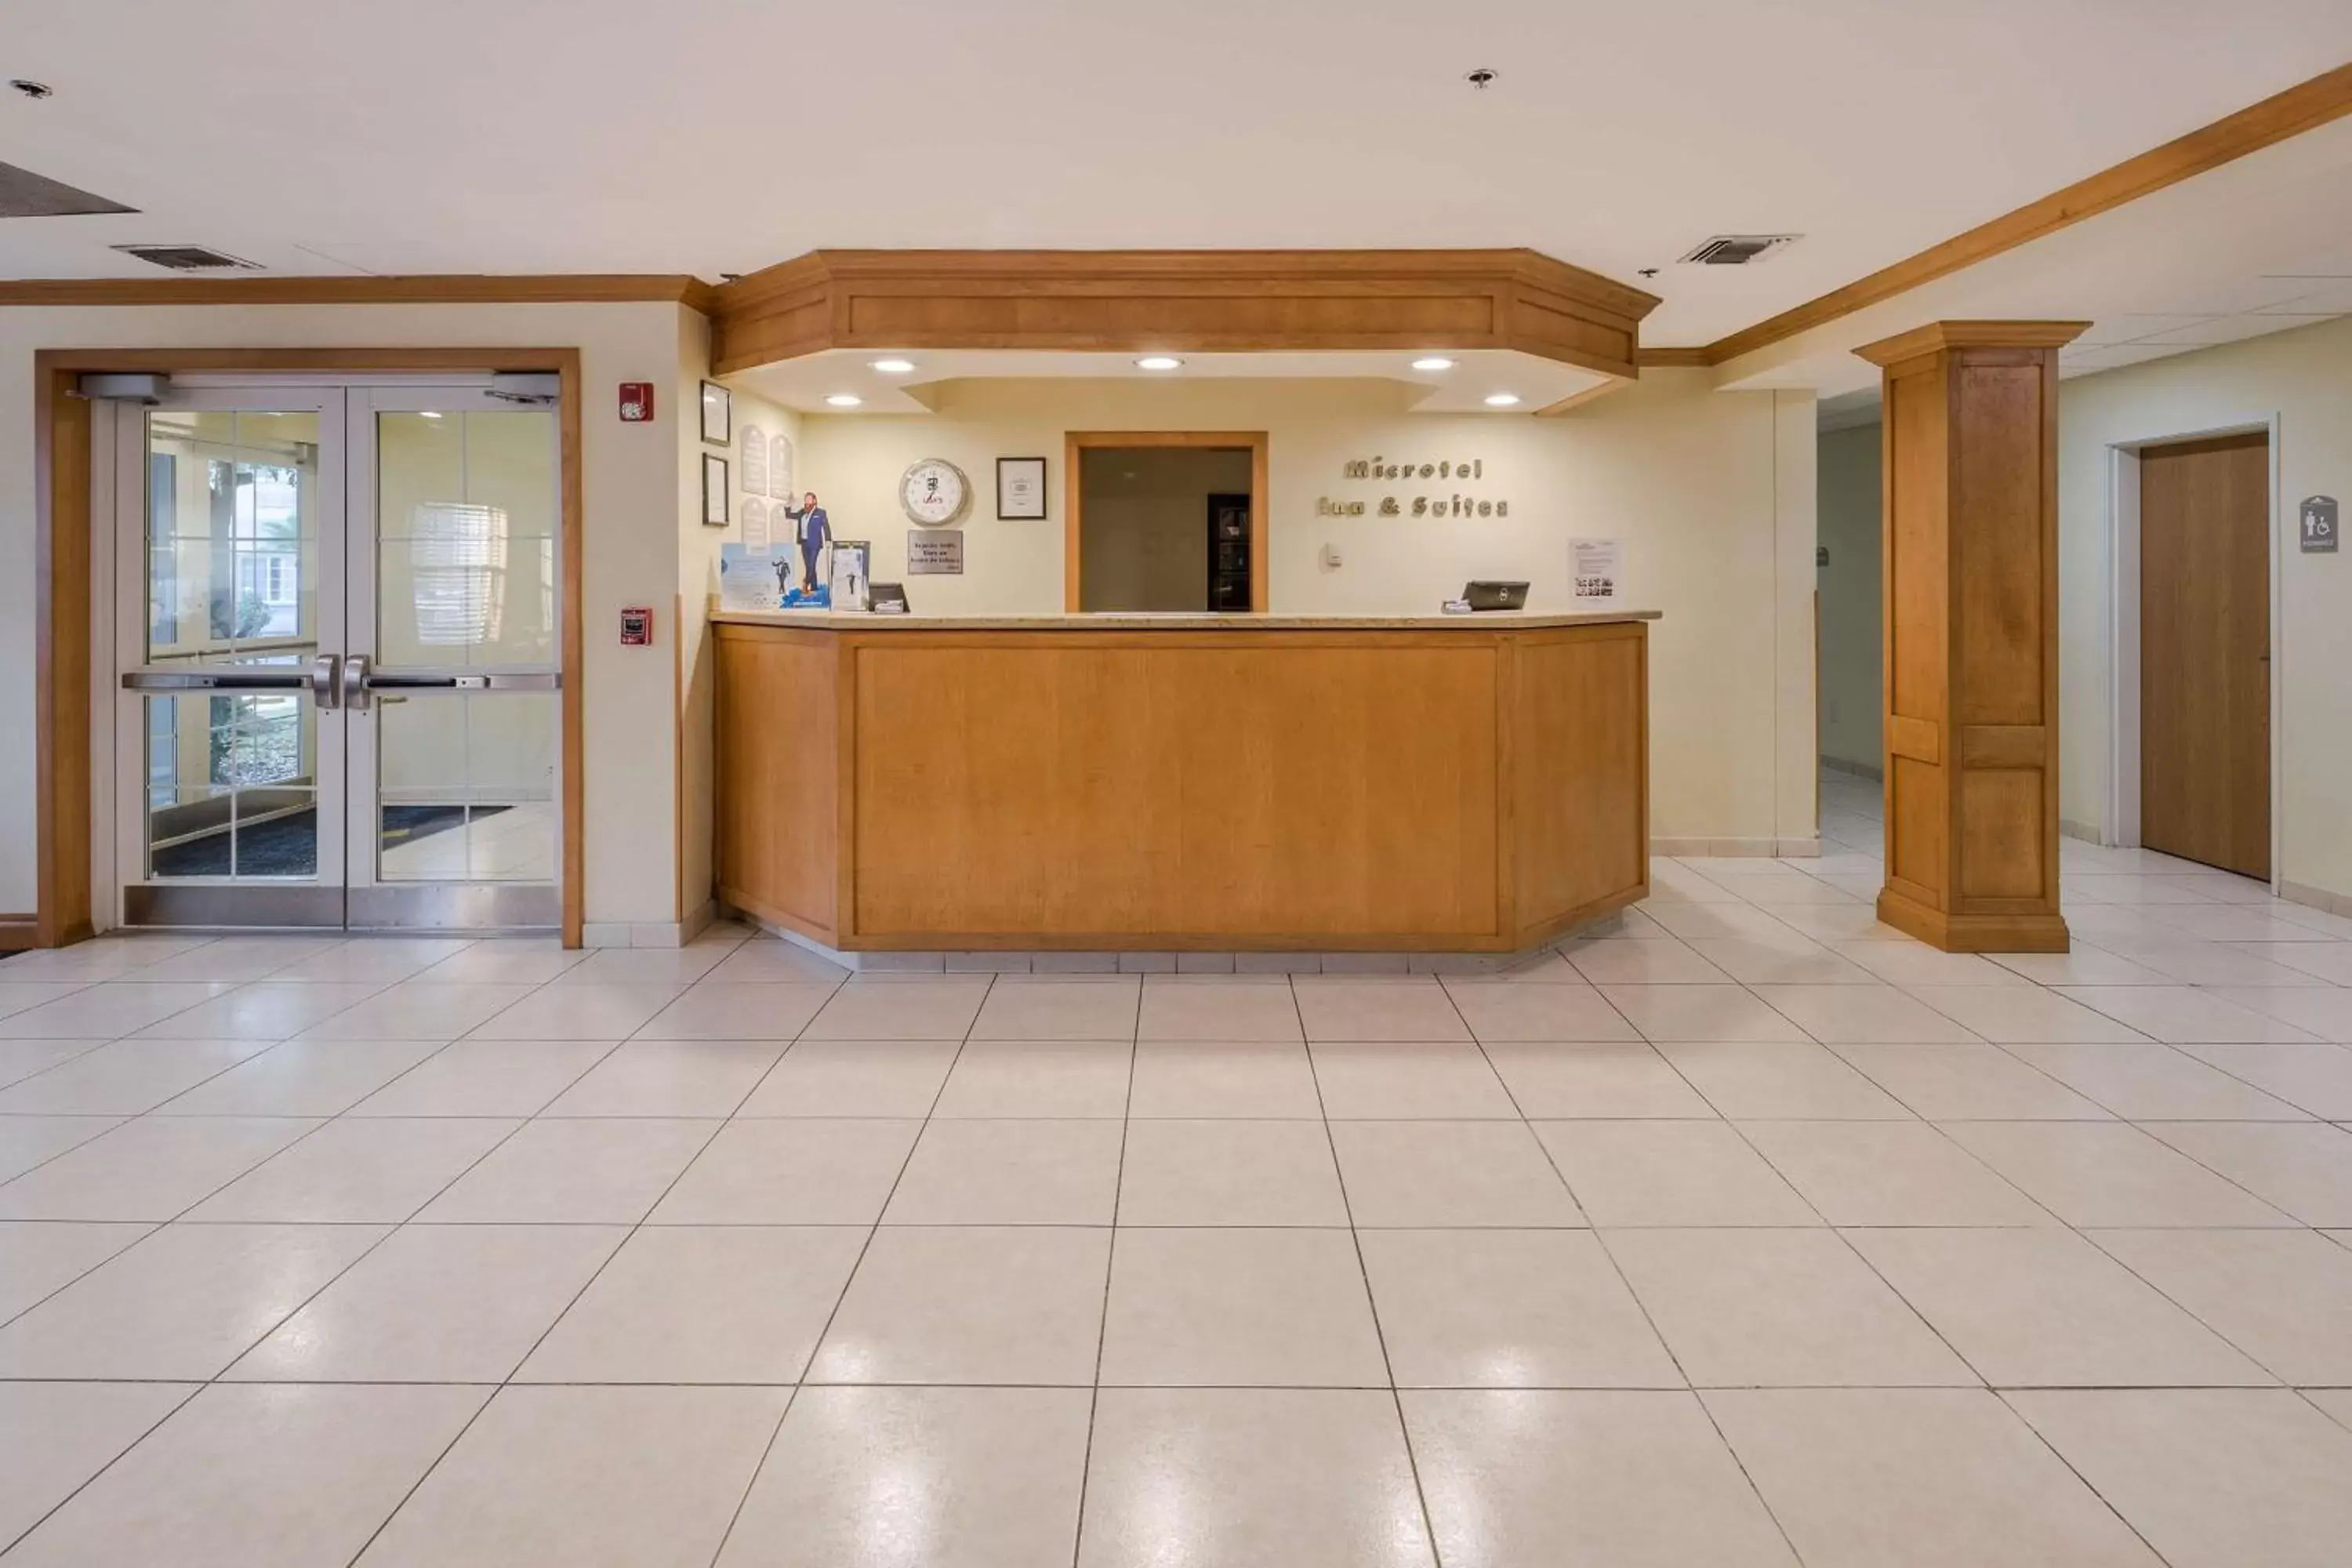 Lobby or reception, Lobby/Reception in Microtel Inn & Suites by Wyndham Culiacán